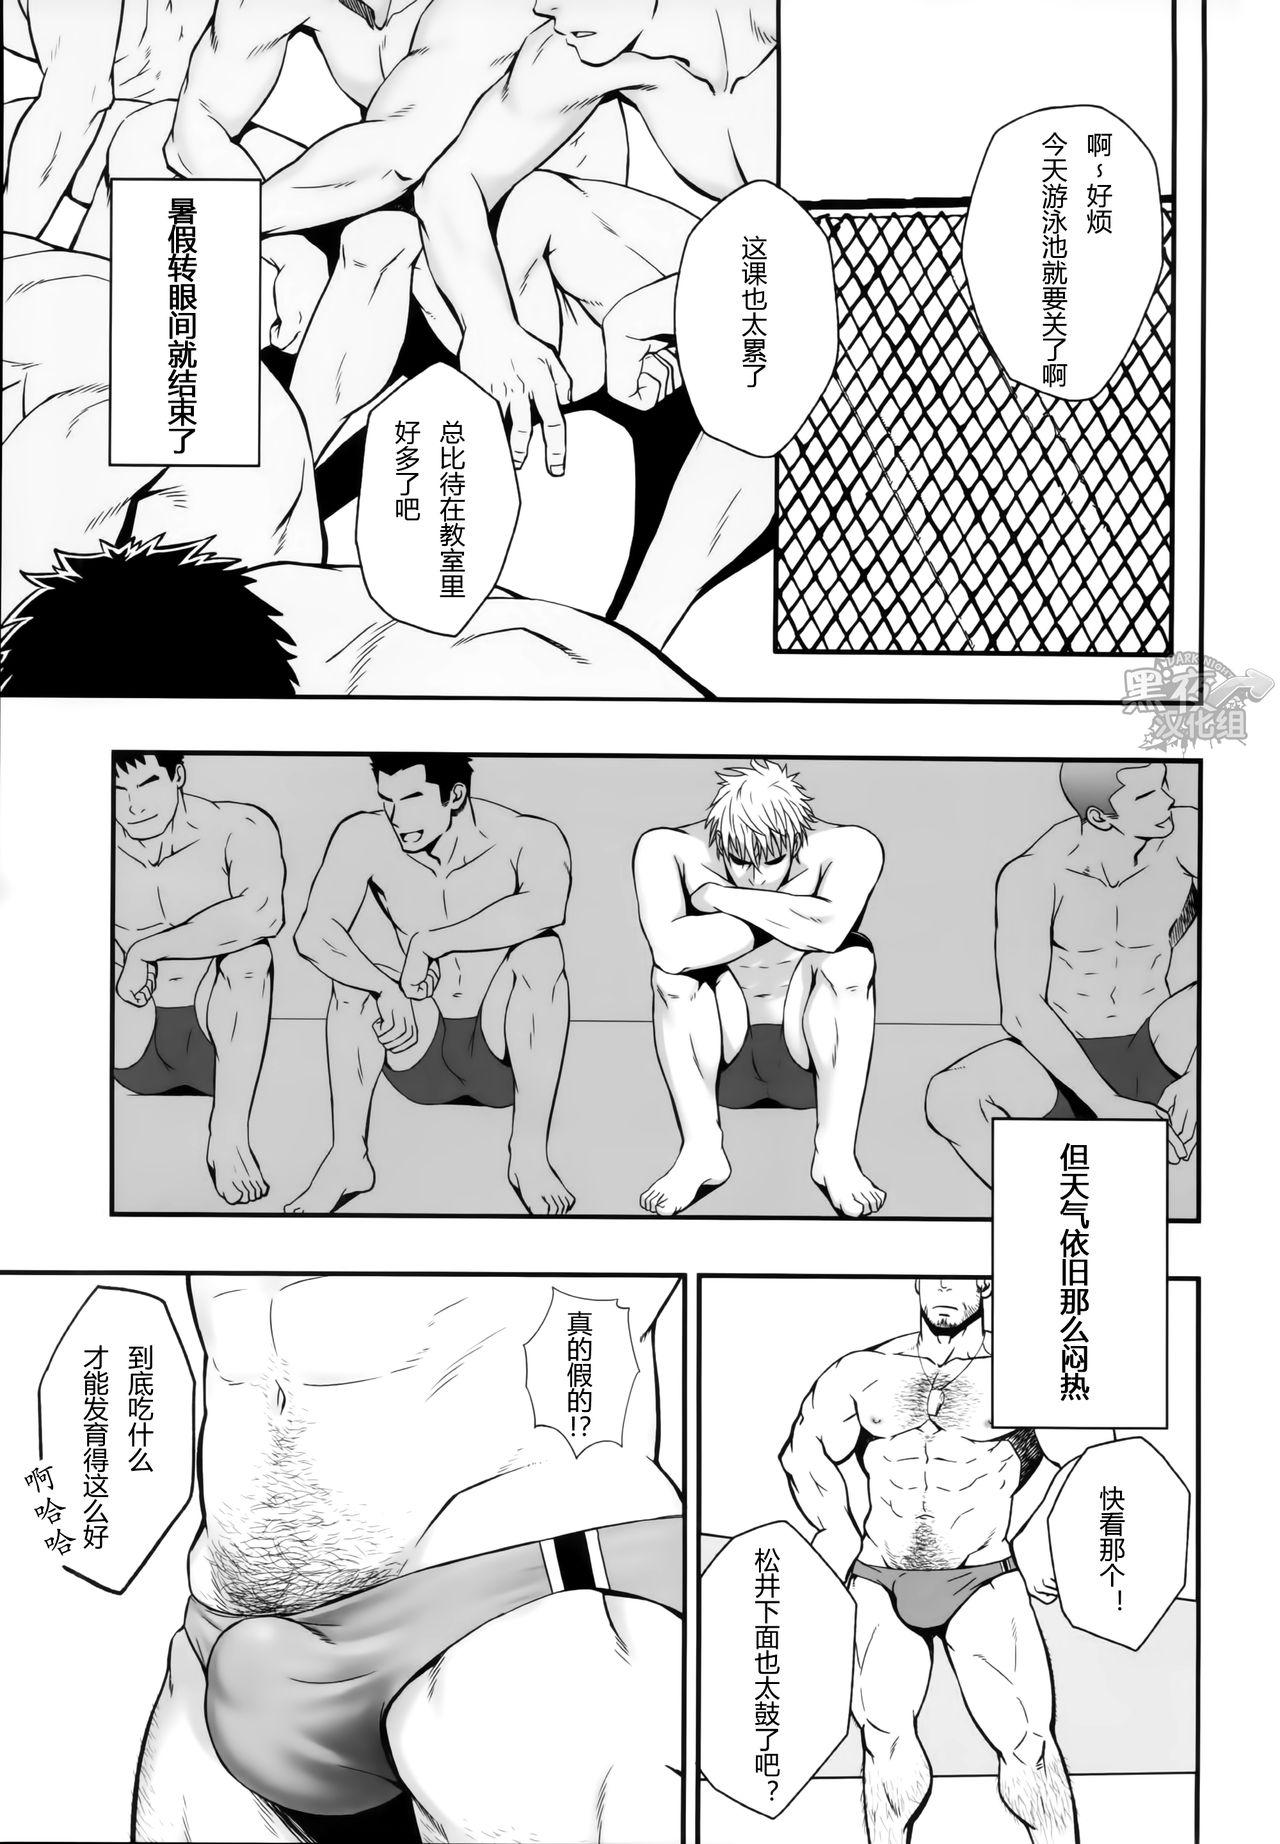 Porn Sudare-Nagori Bokep - Page 2